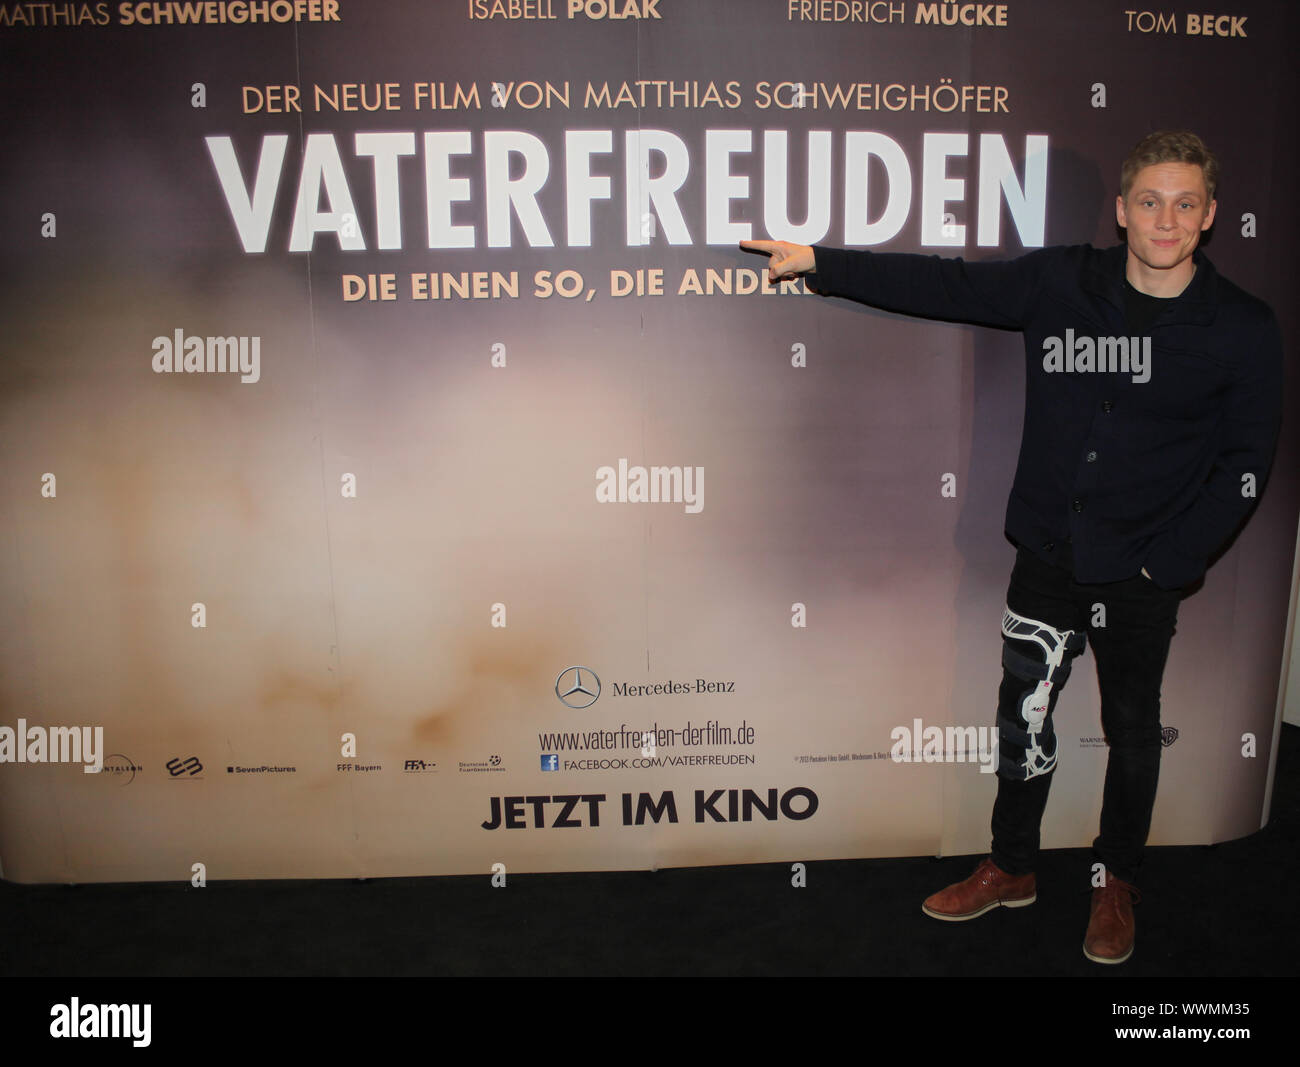 Schauspieler Matthias Schweighöfer bei der Premiere von Vaterfeuden am 6.2.2014 in Magdeburg Stock Photo